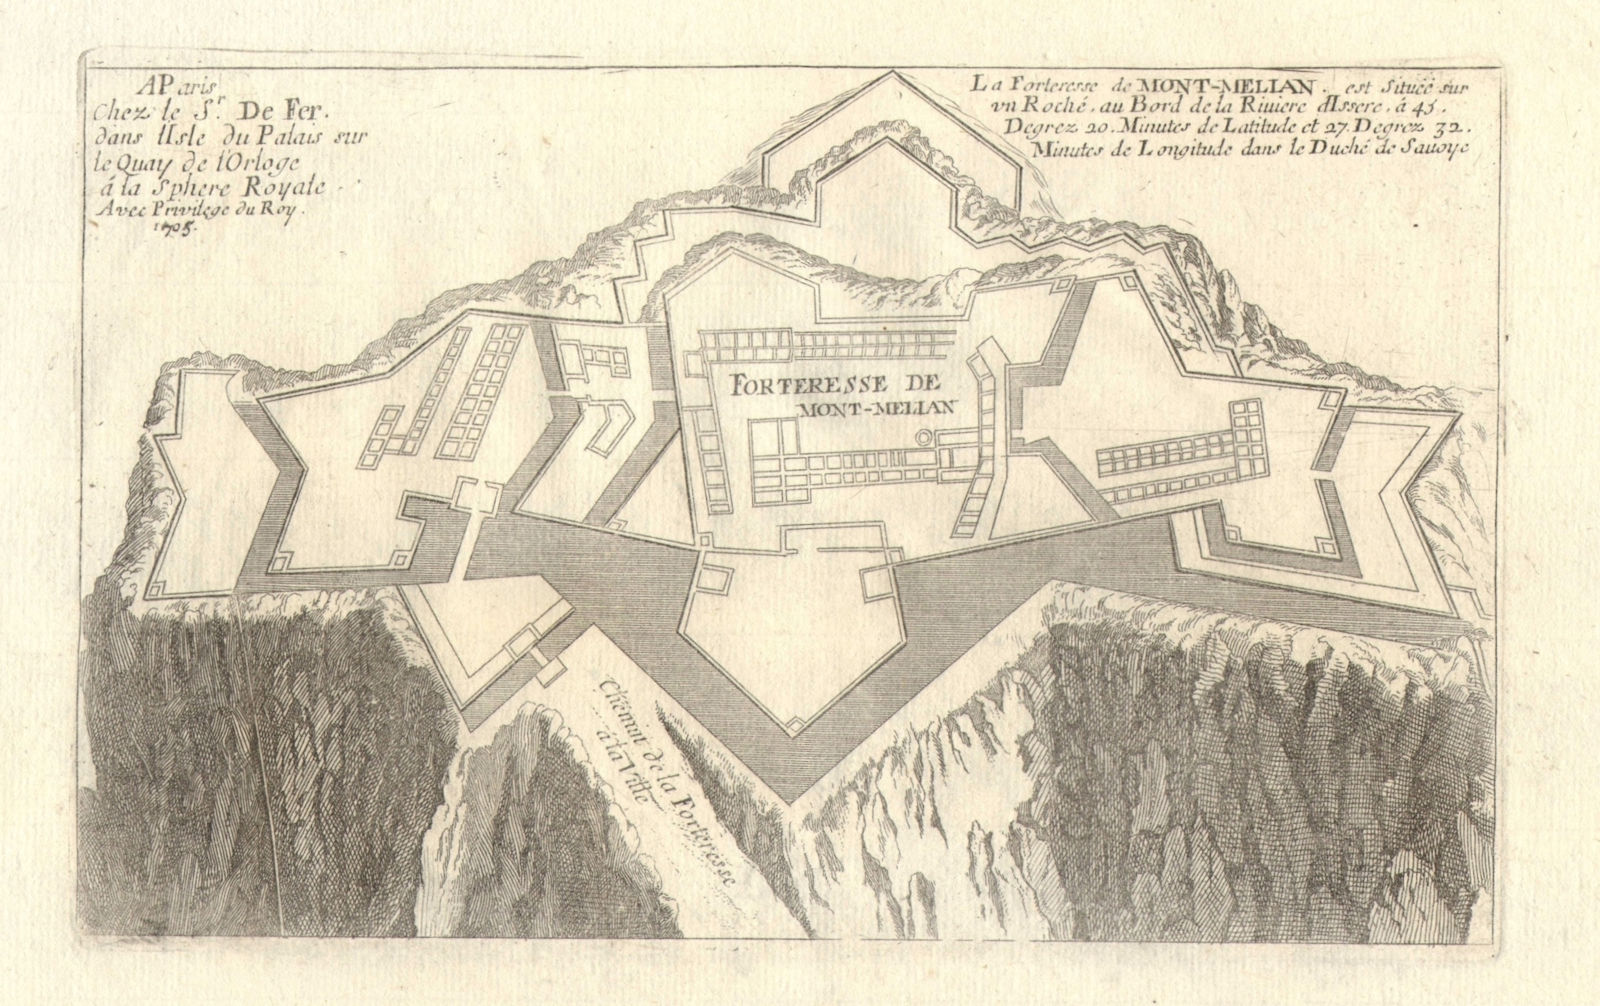 Associate Product 'La forteresse de Mont-Melian'. Montmélian fortress. Savoie. DE FER 1705 map